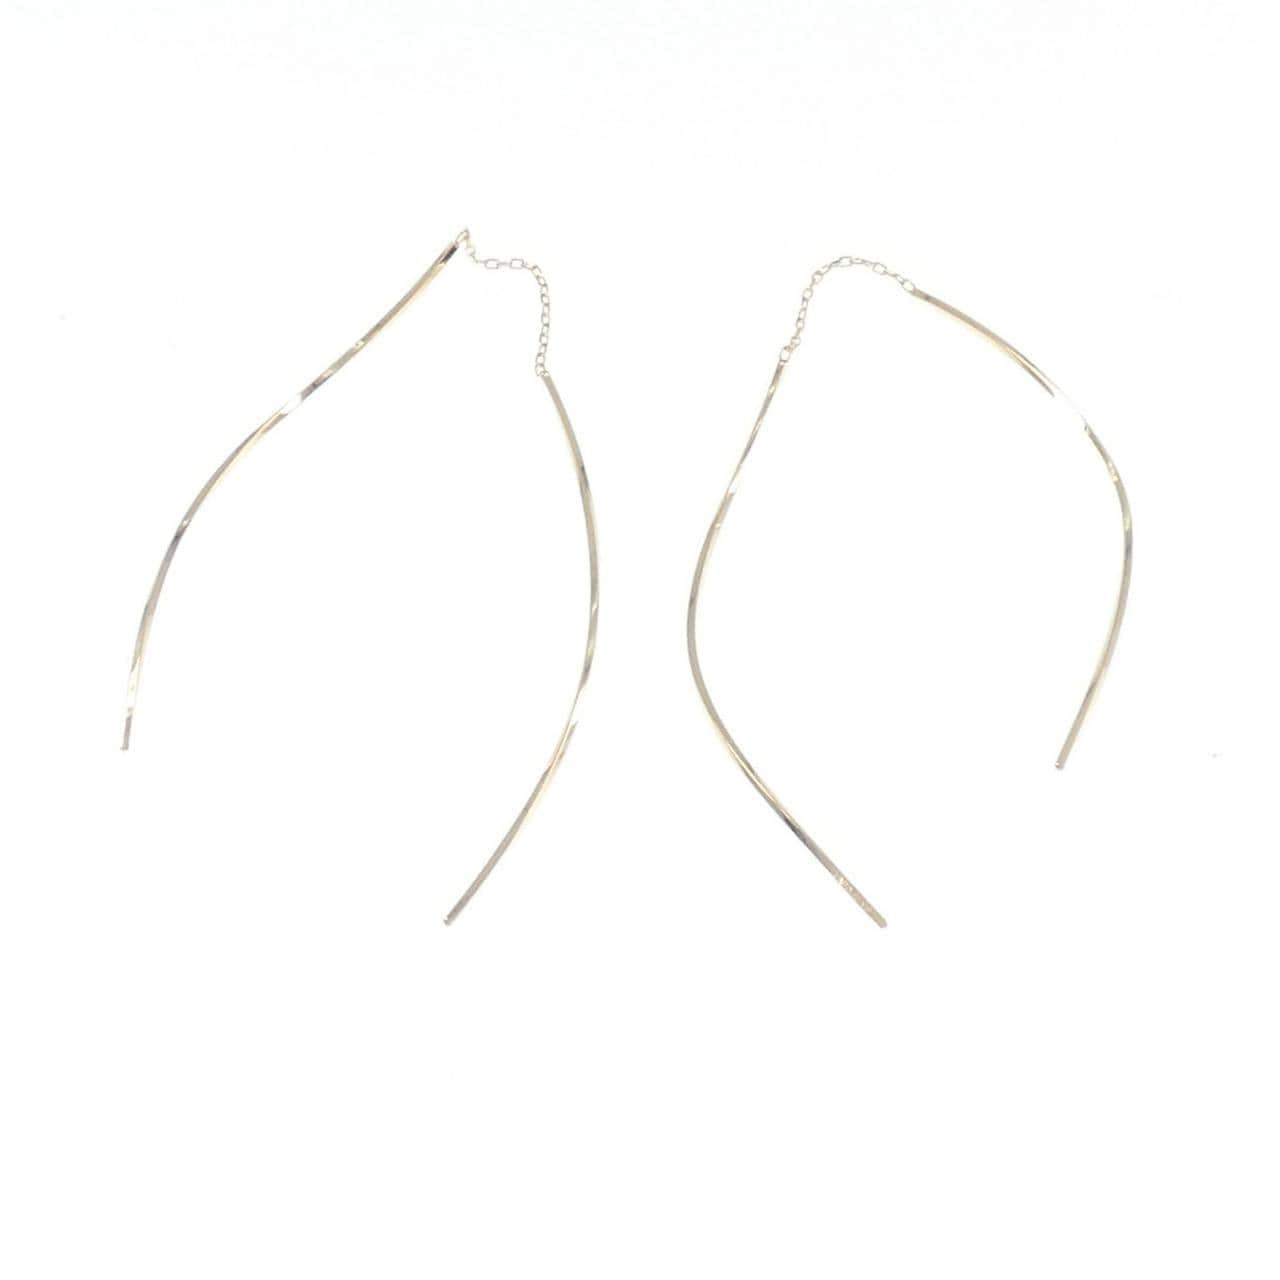 4゜C K18YG earrings